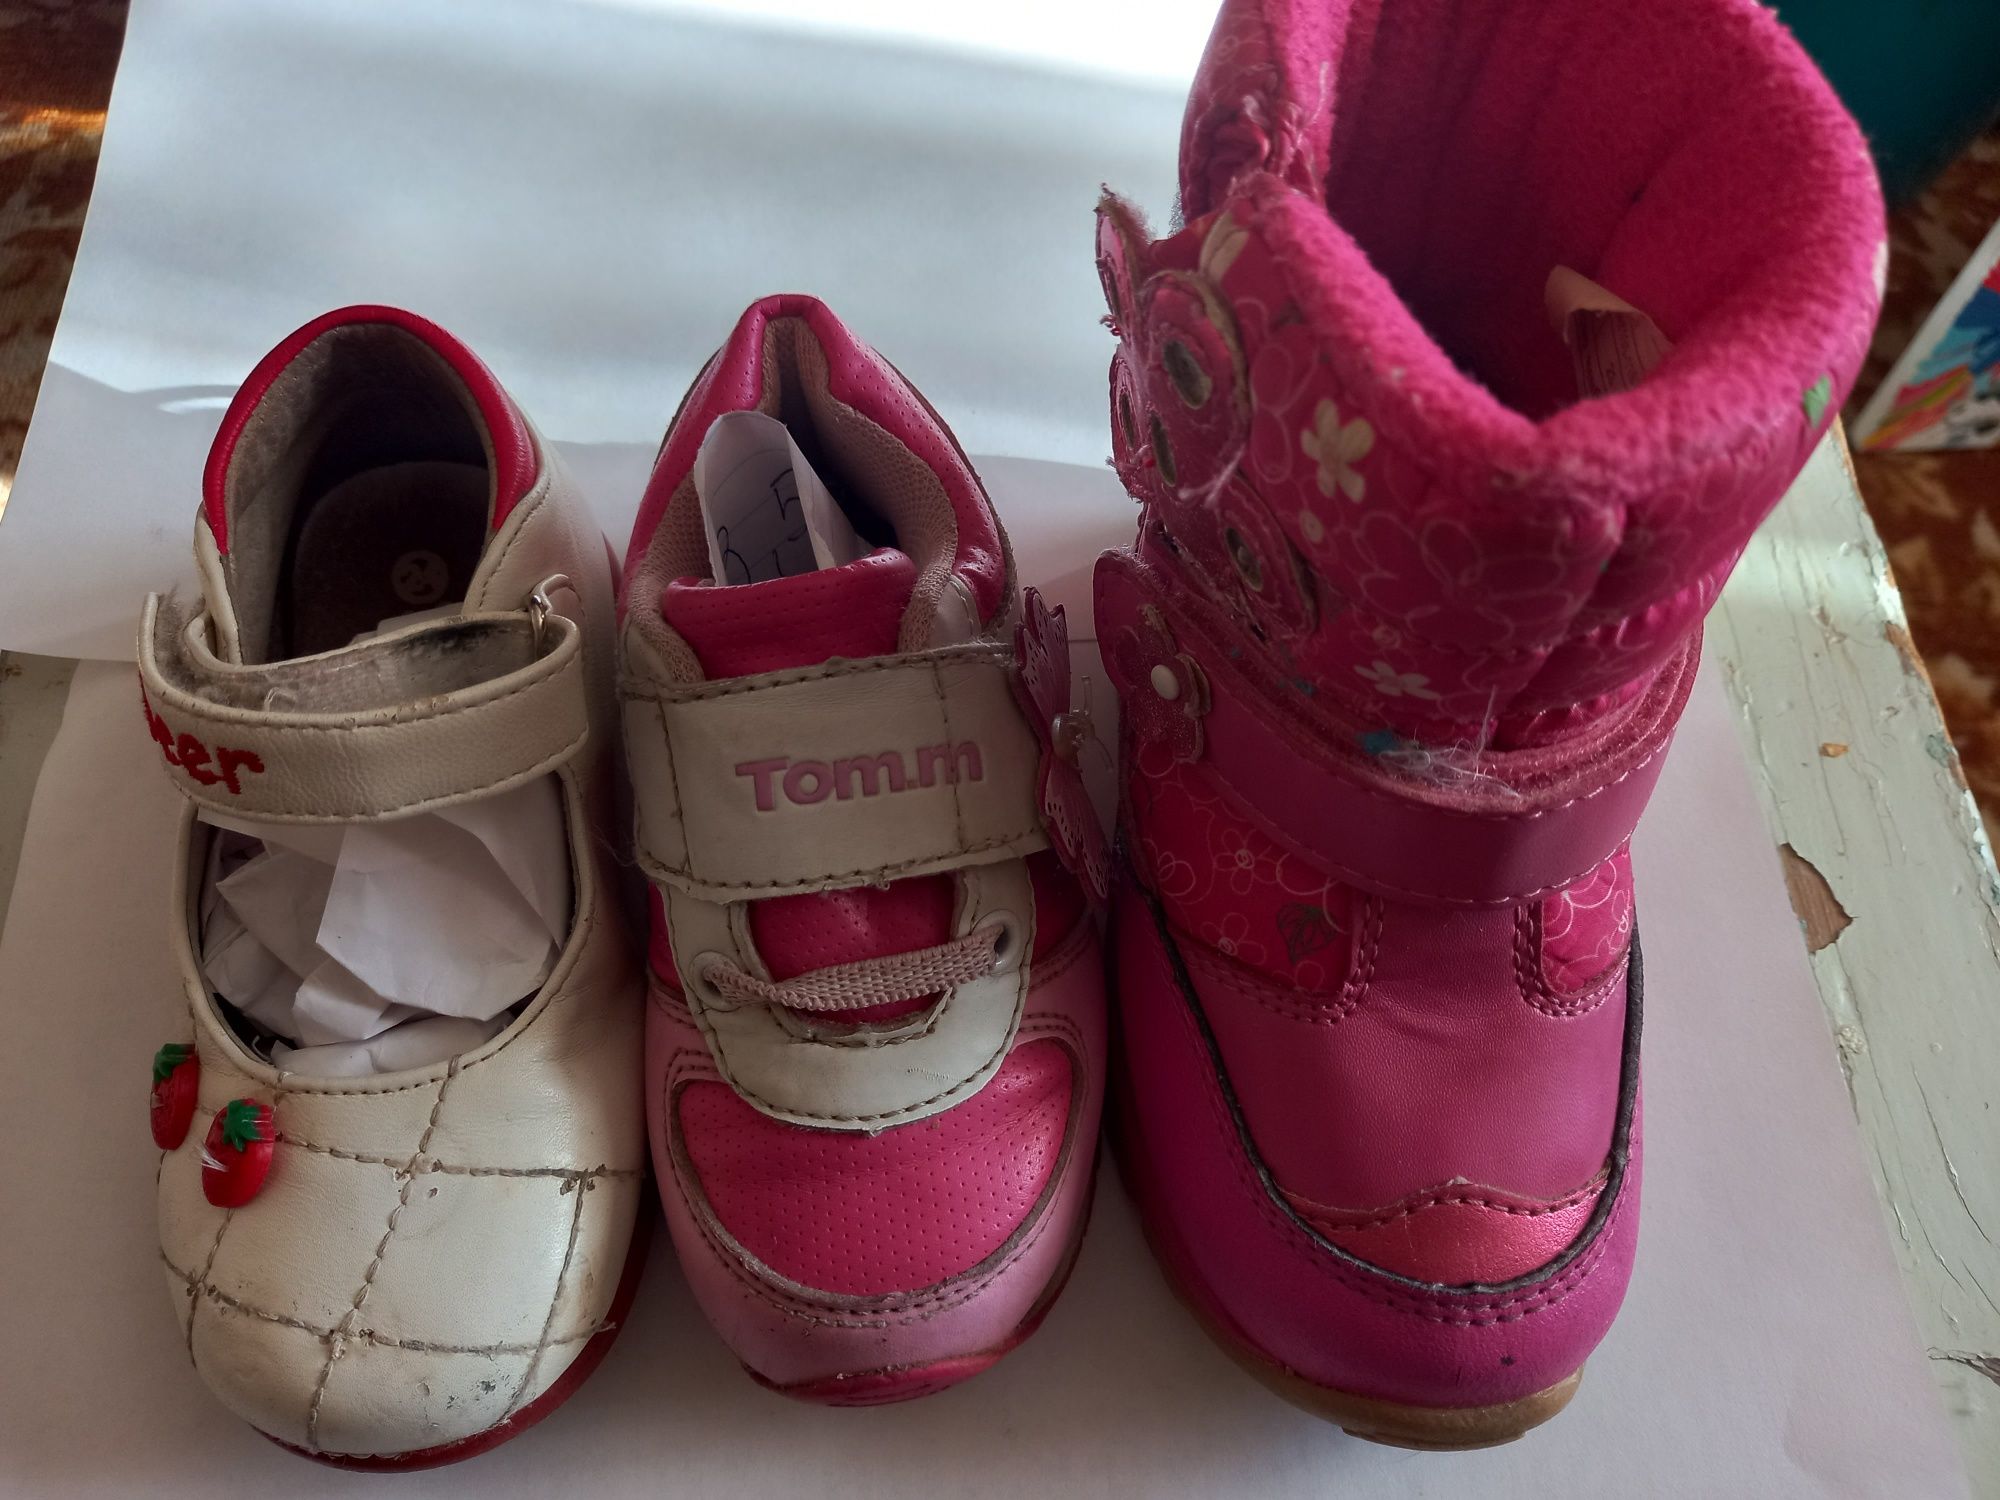 Детская обувь разных размеров и сезонов. От 15 до 18см по стельке.Цены